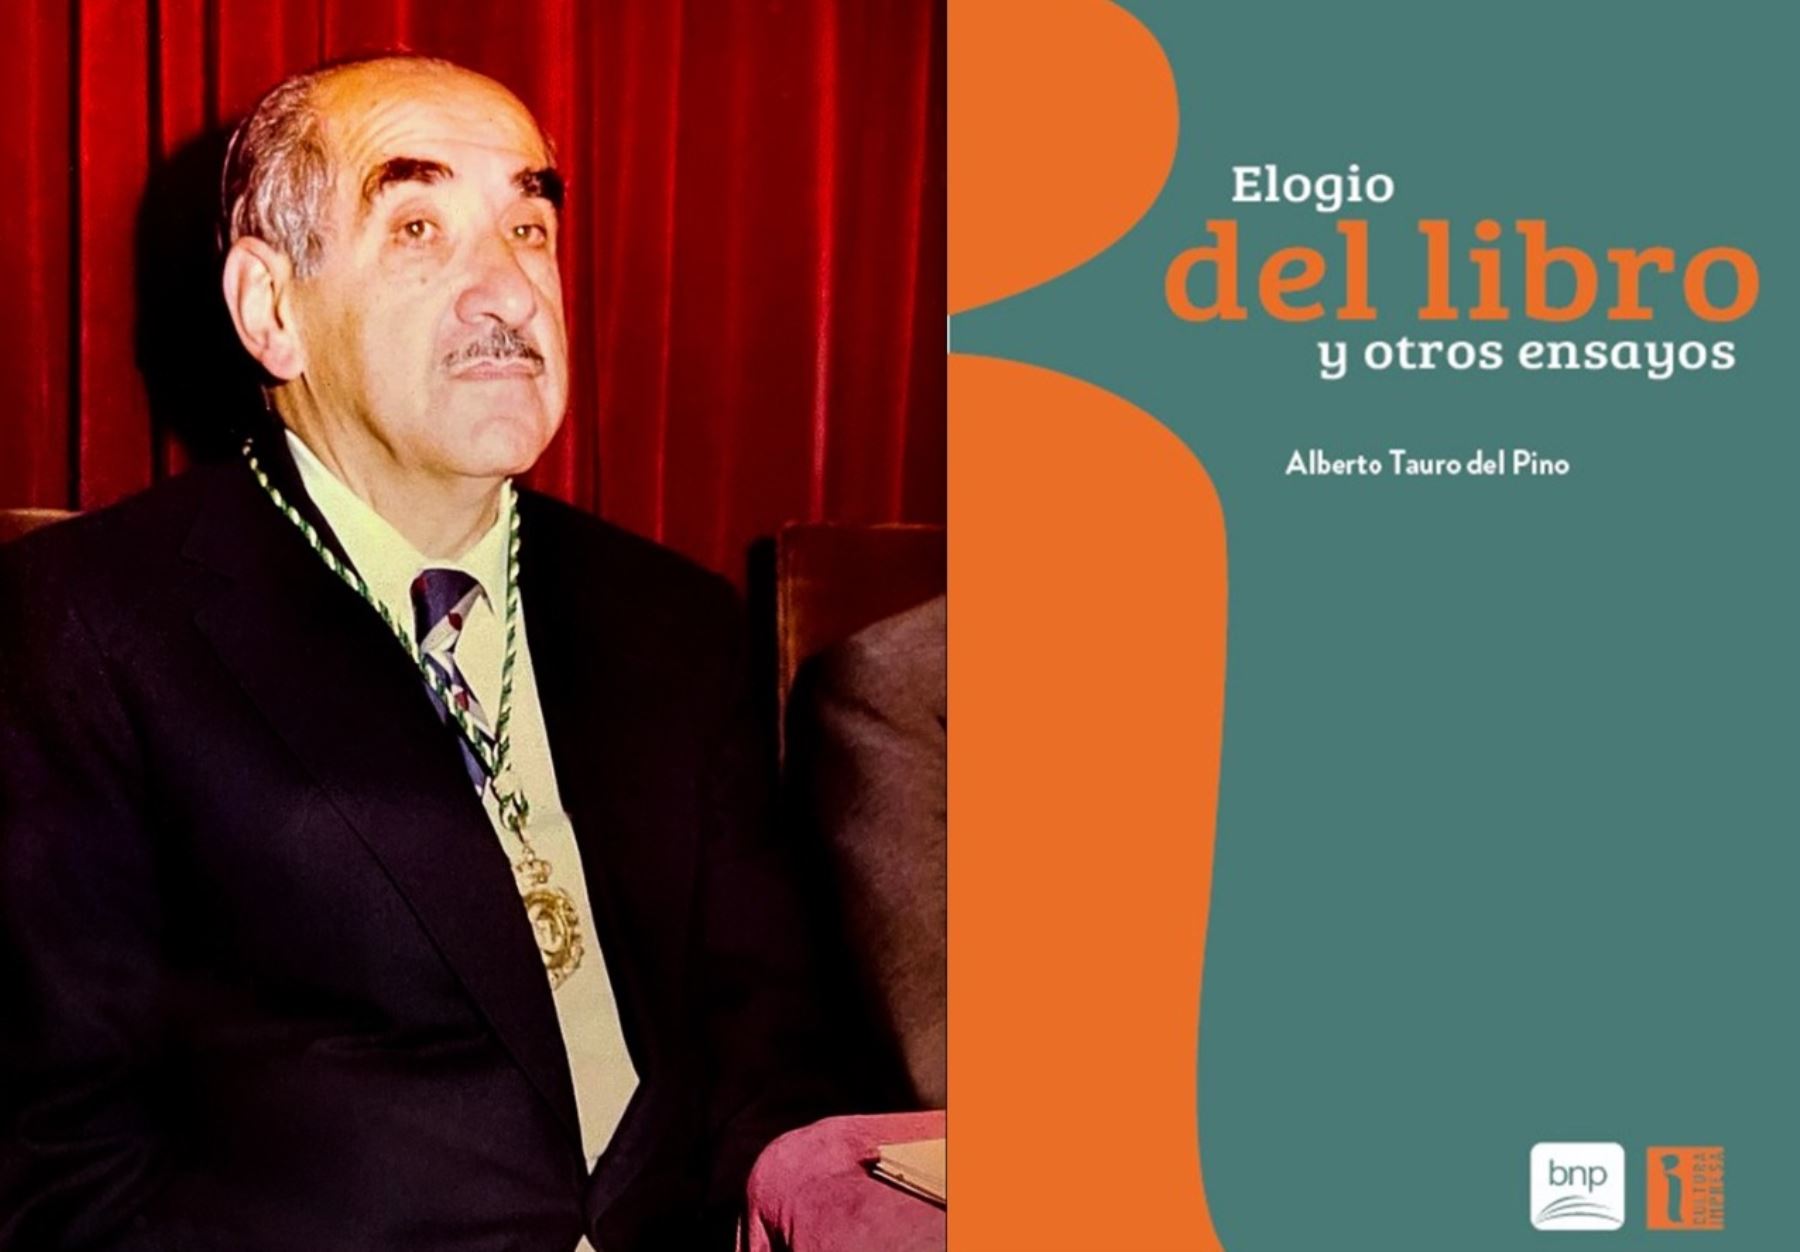 BNP presentará la publicación \"Elogio del libro y otros ensayos\" de Alberto Tauro del Pino